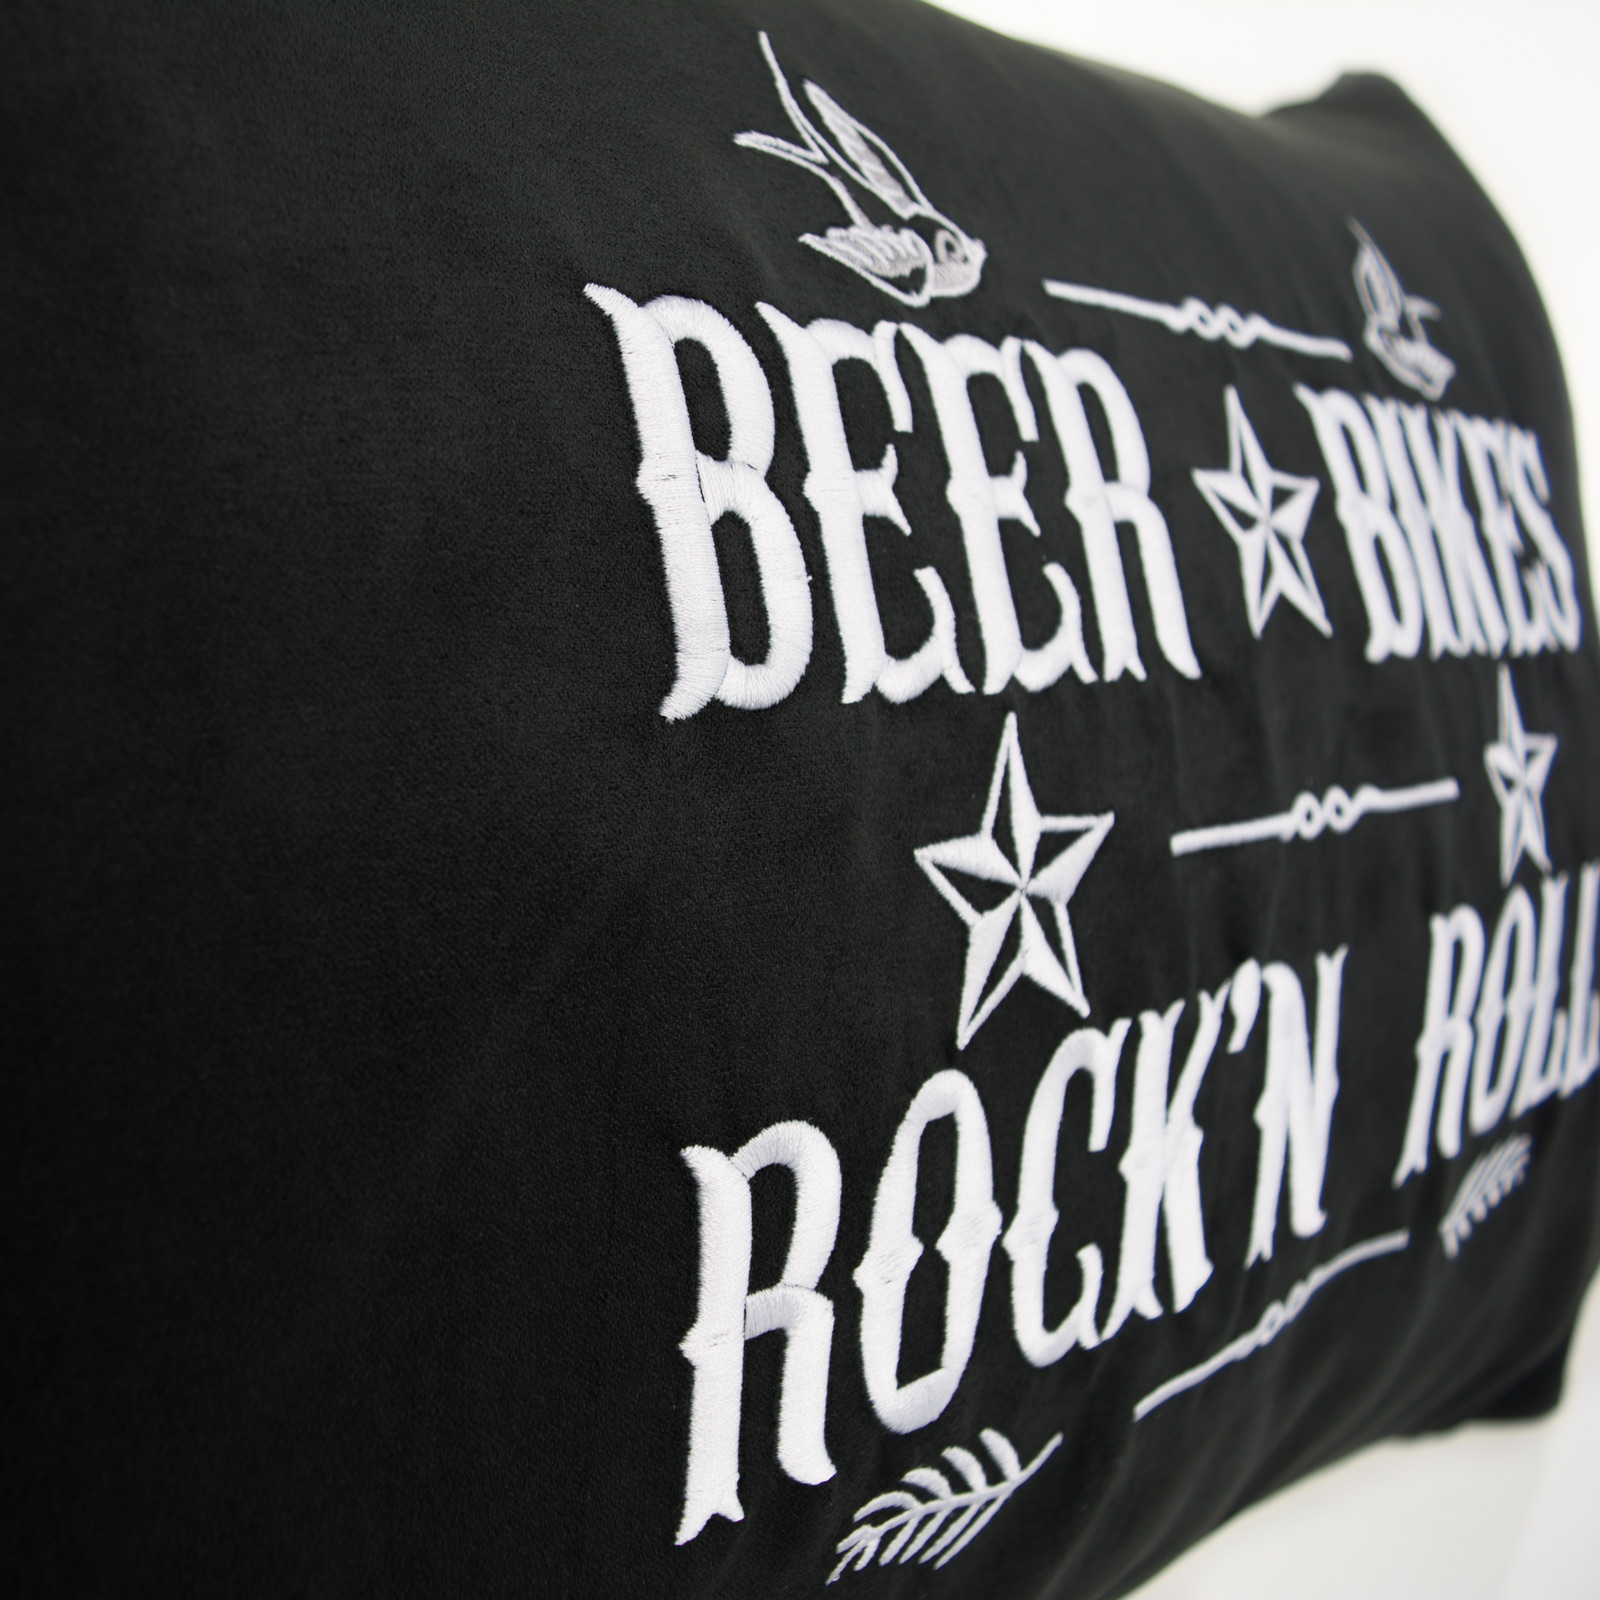 Beer Bikes Rock'n Roll